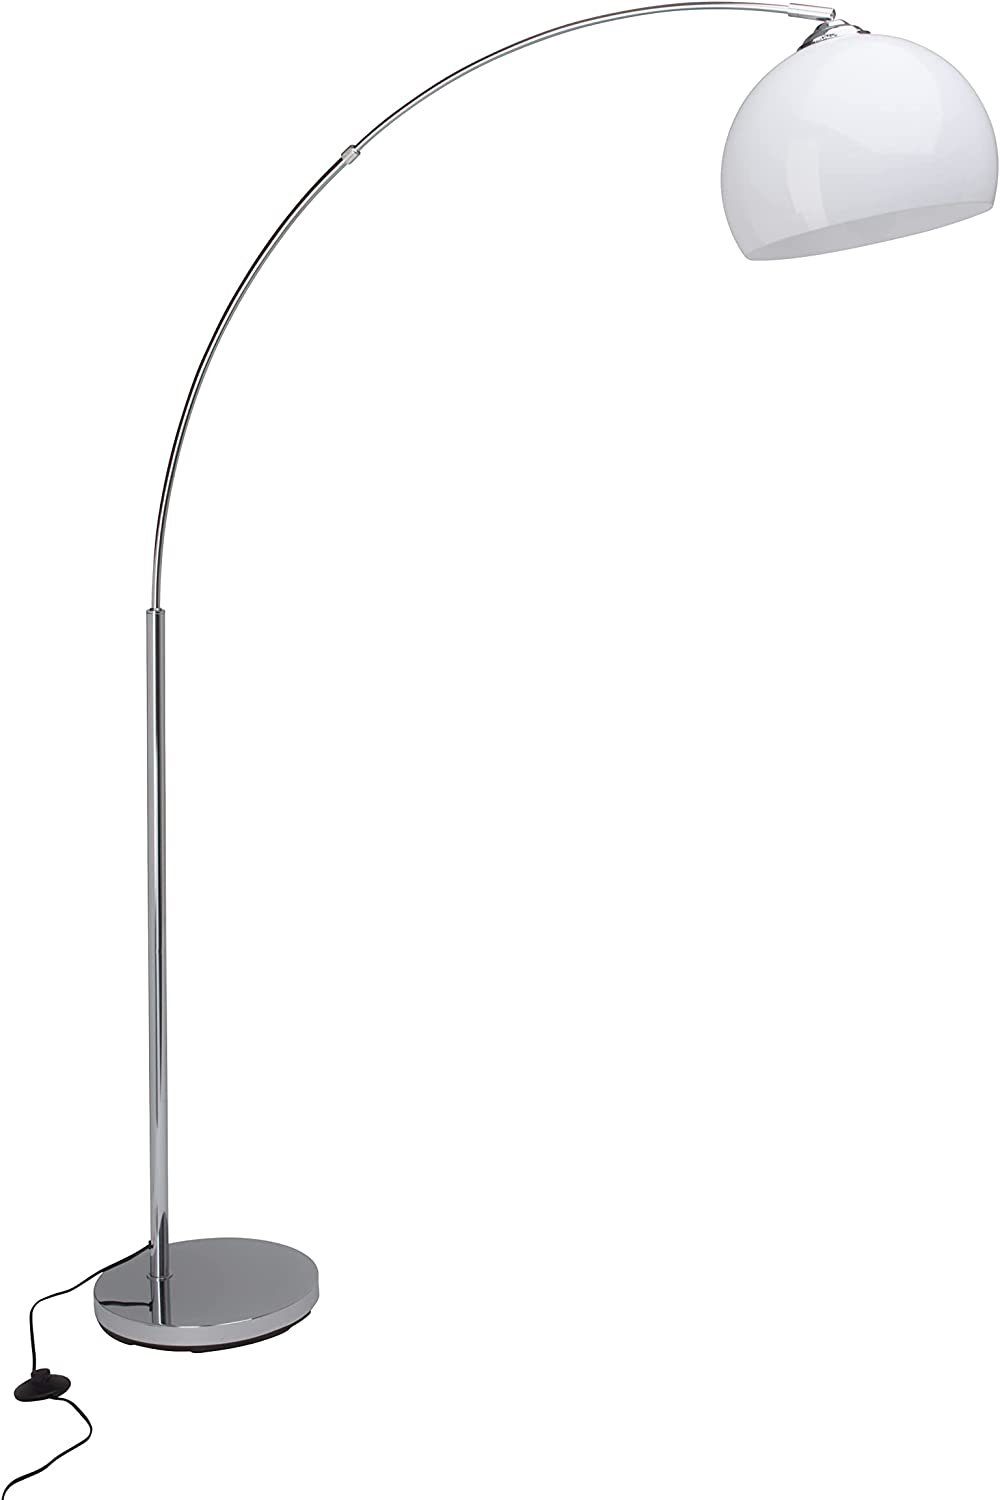 ZWEITE Vessa WAHL Stehlampe Lampe Vessa, Bogenstandleuchte chrom/weiß 1,7m Brilliant